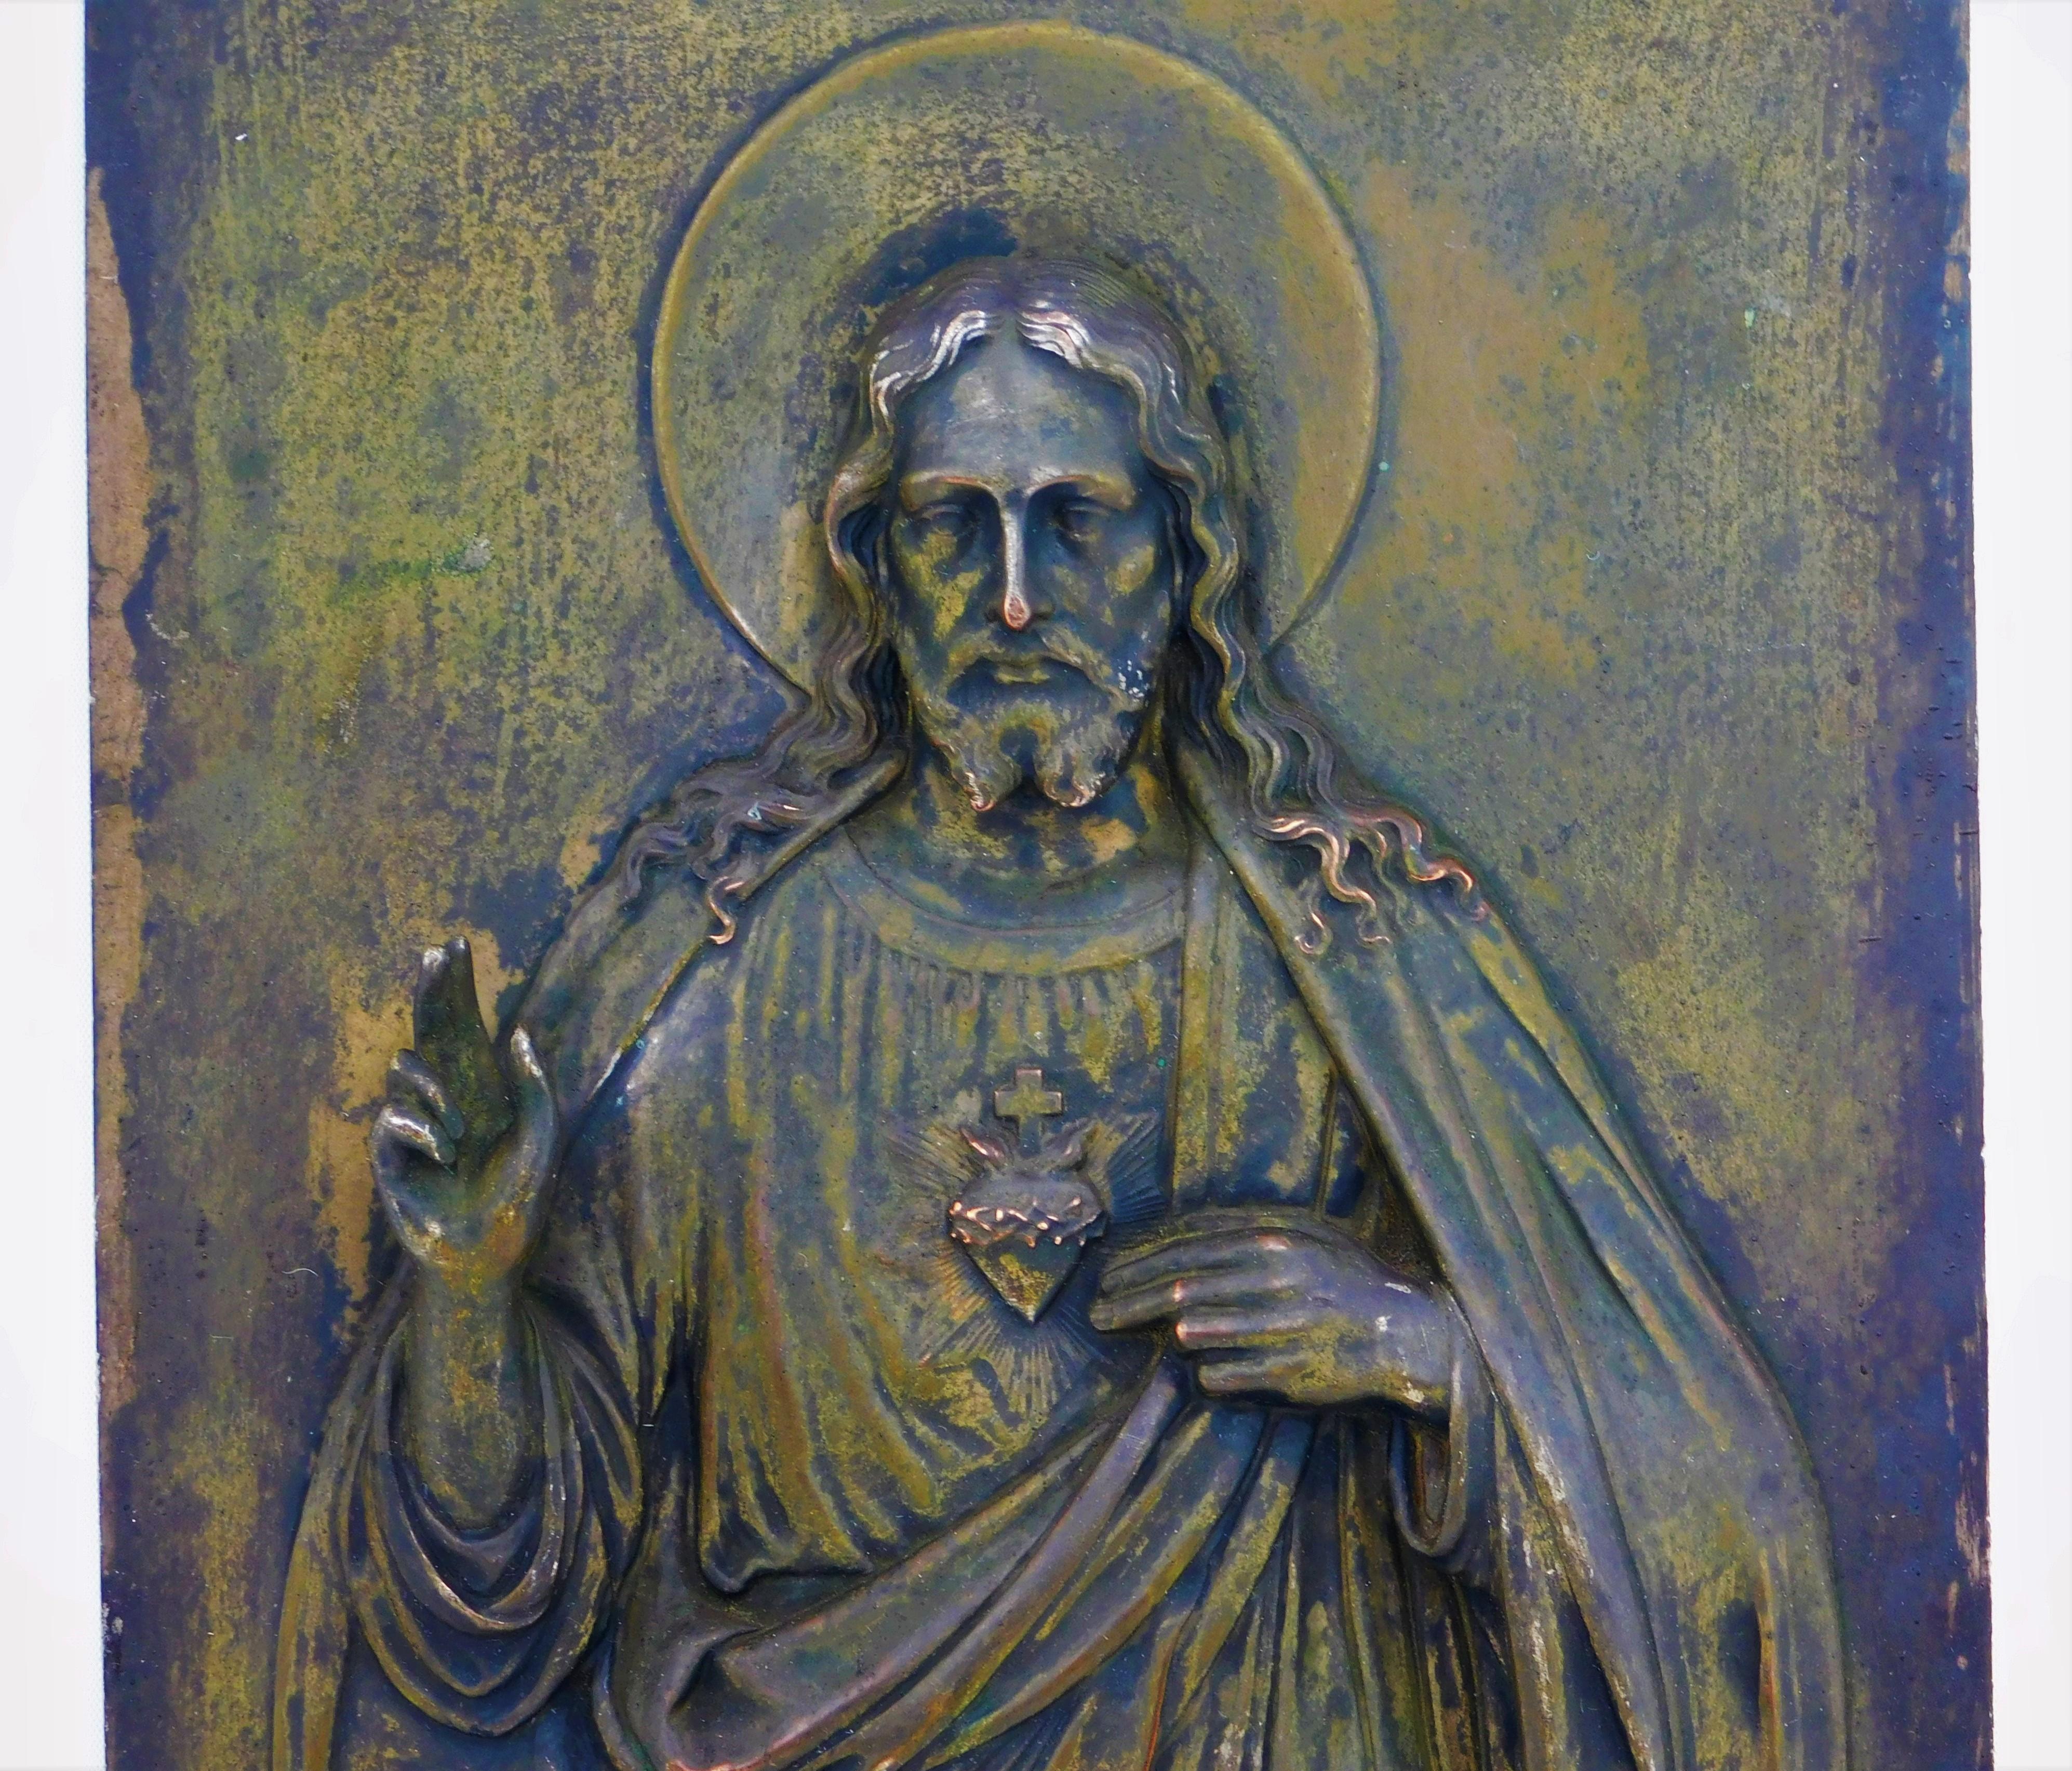 Placa de bronce en relieve de Jesús de 1890, procedente de Italia, bien elaborada y con una hermosa pátina, que mide 10